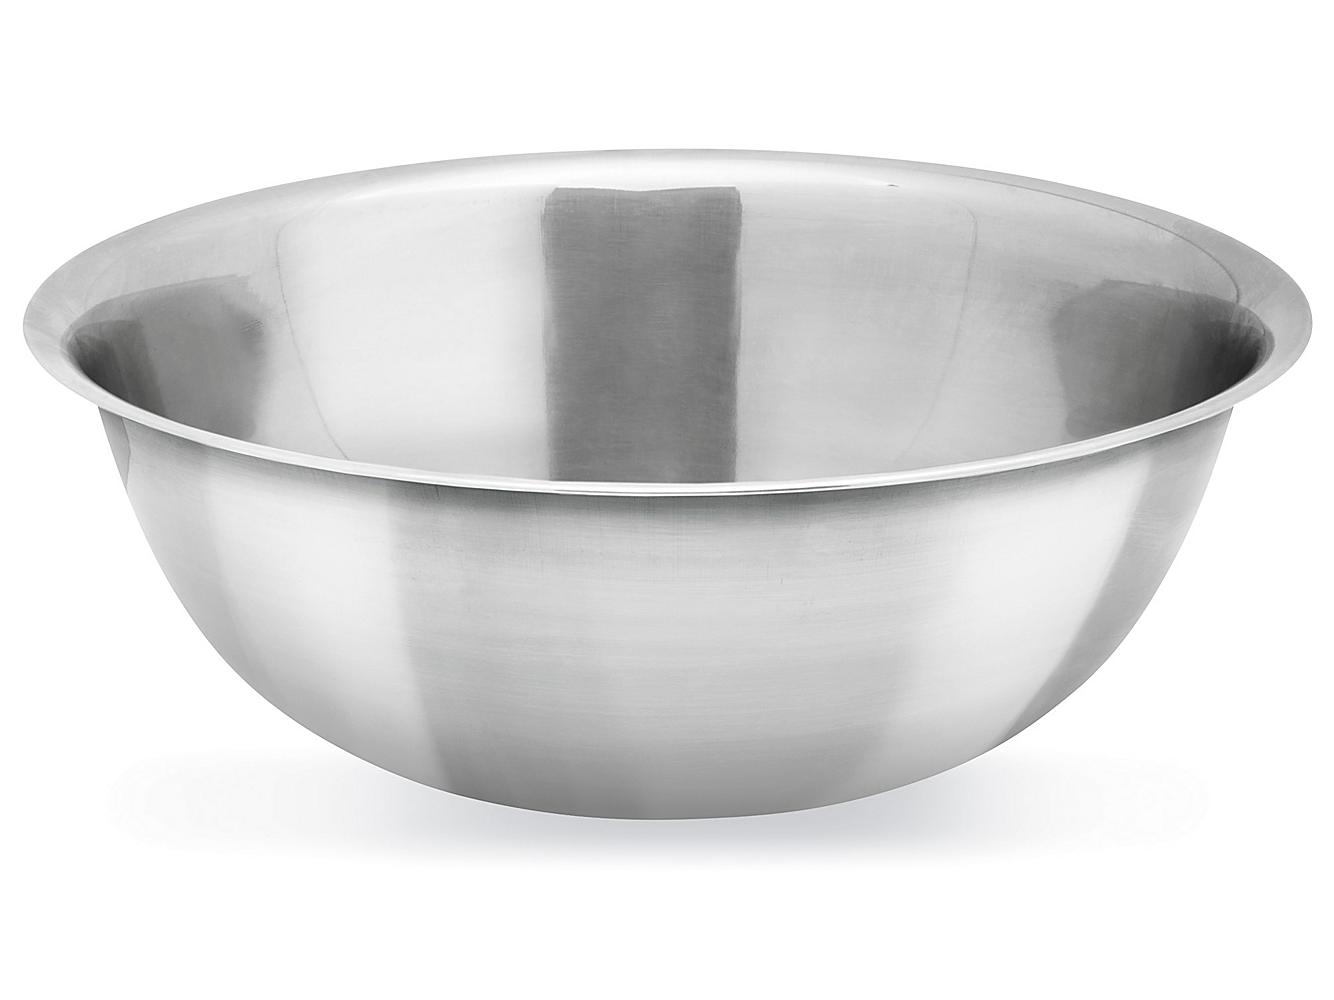 Commercial Mixing Bowls - 5 Quart